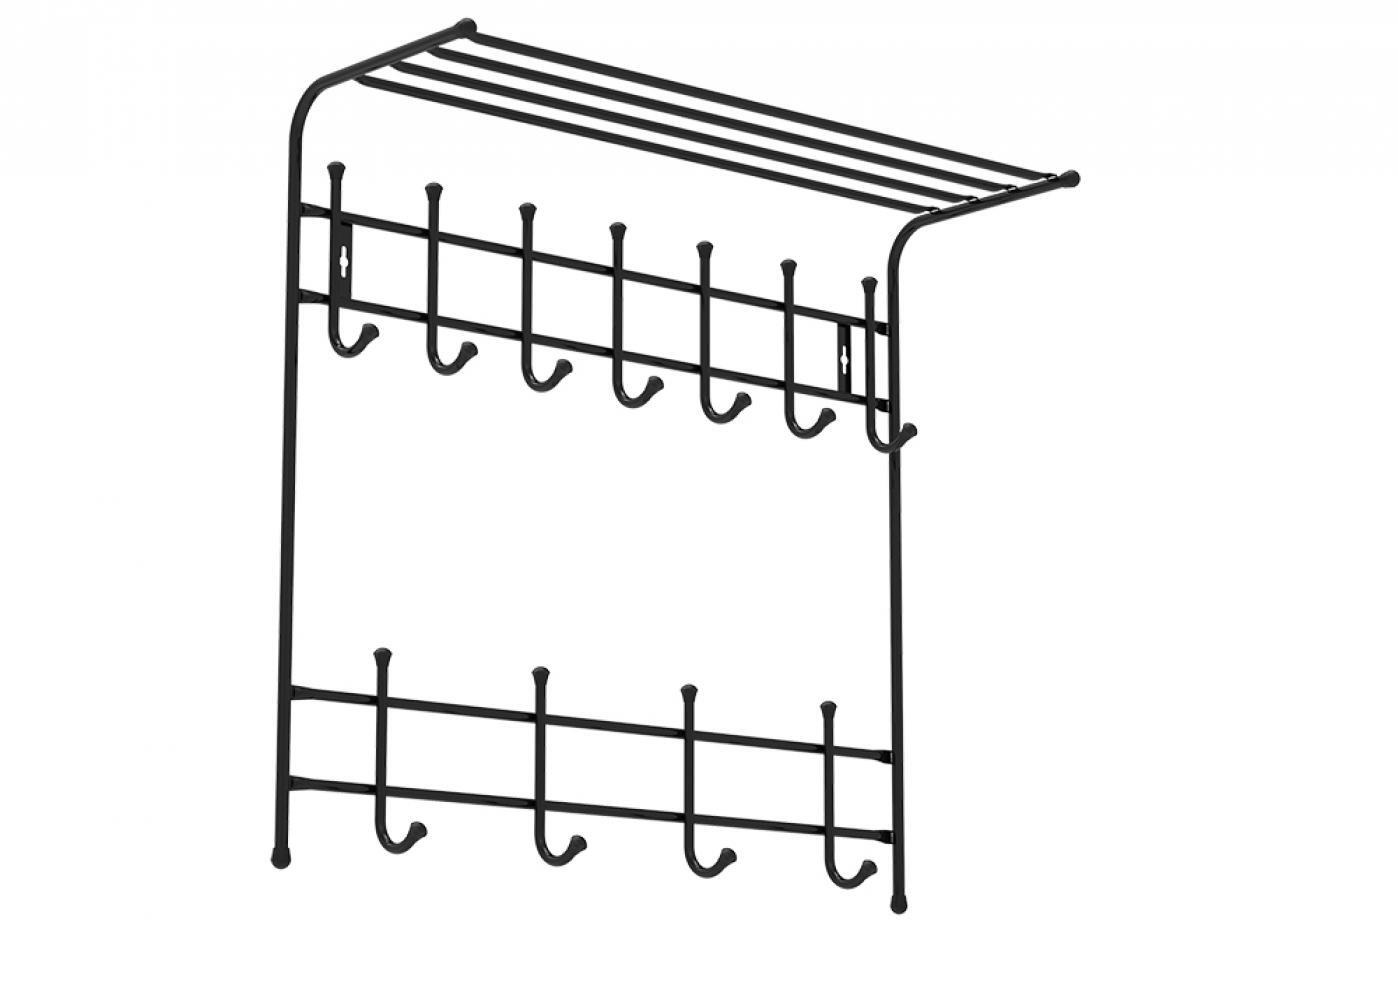 вертикальная настенная вешалка для одежды